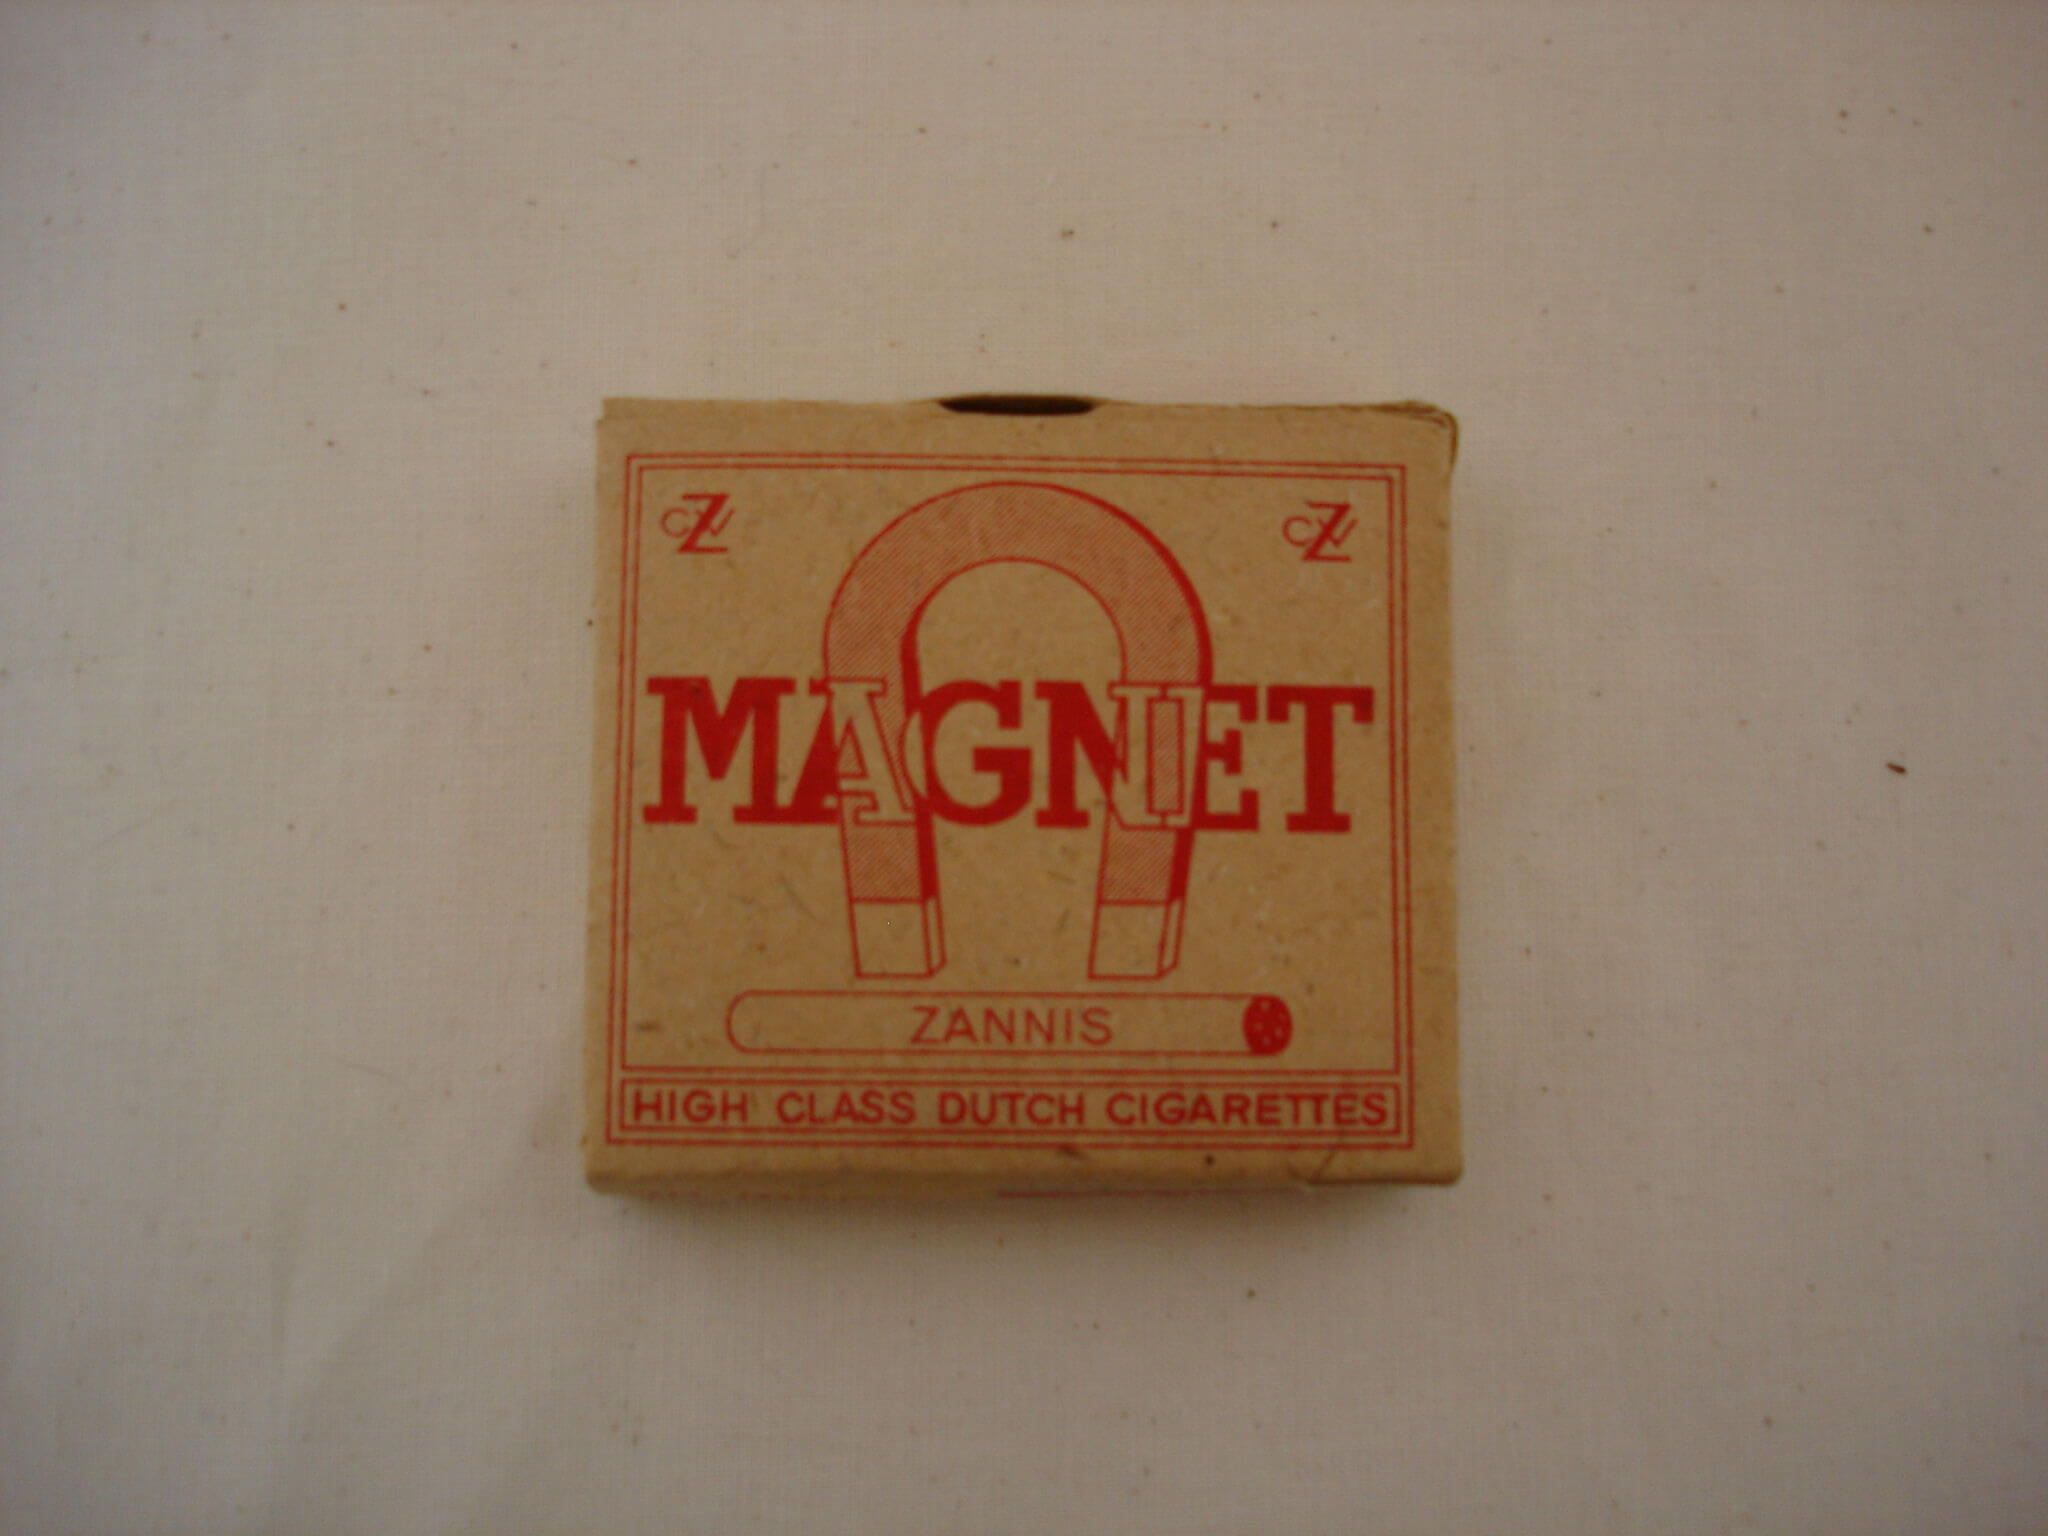 Magneet Sigaretten uit de tweede wereldoorlog